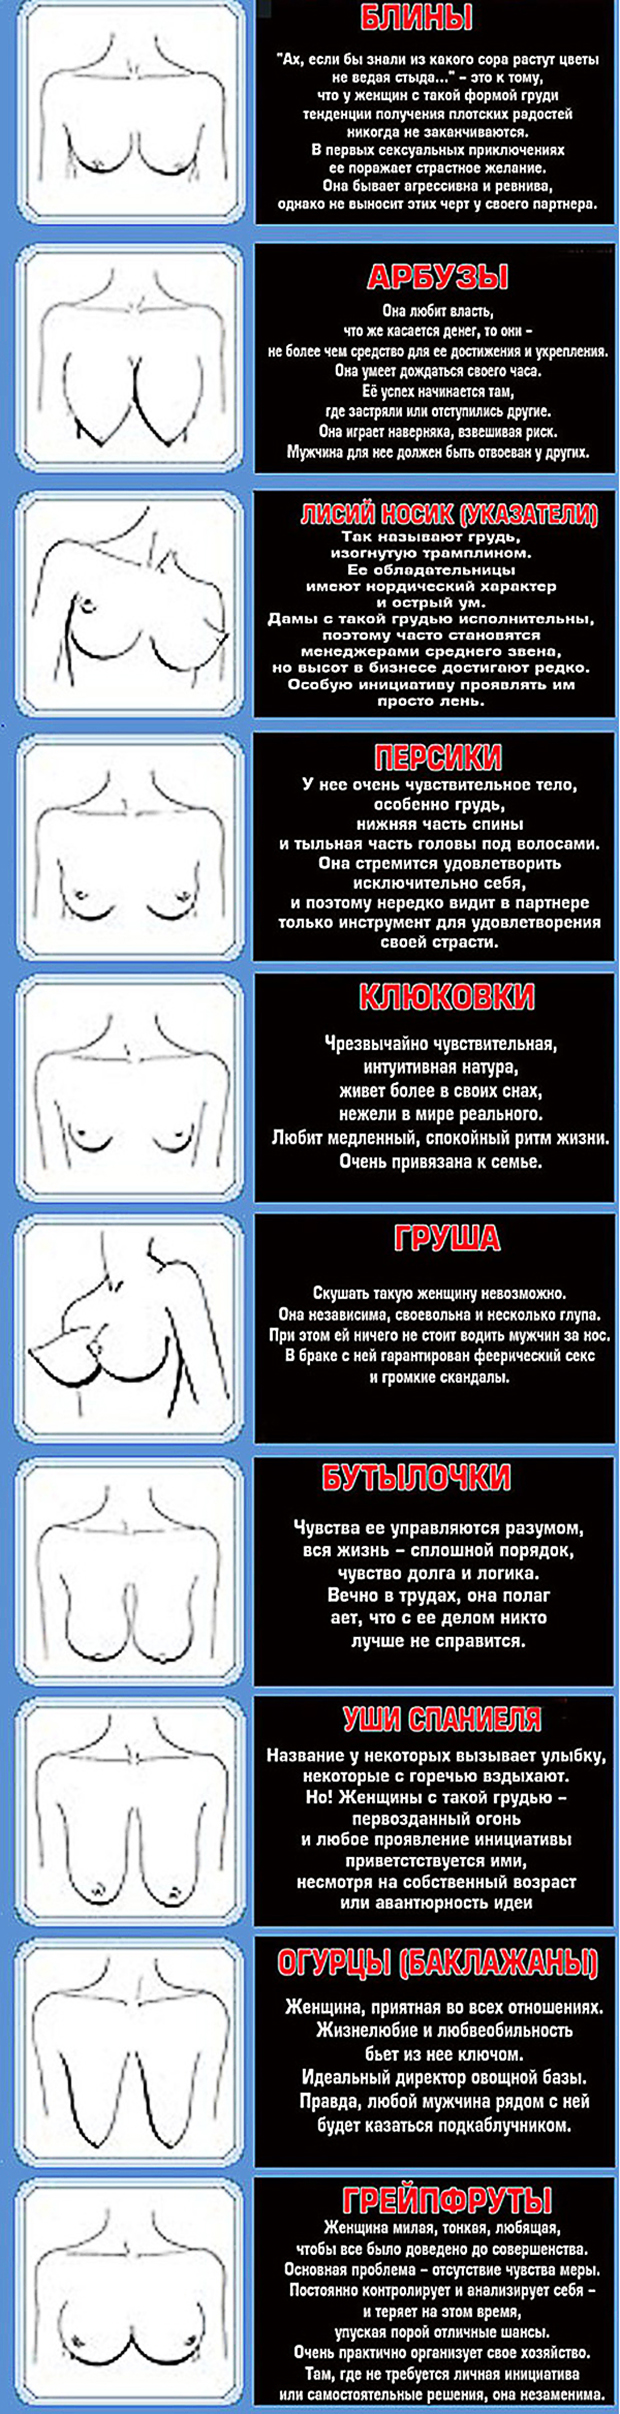 названия форм груди у женщин фото 77